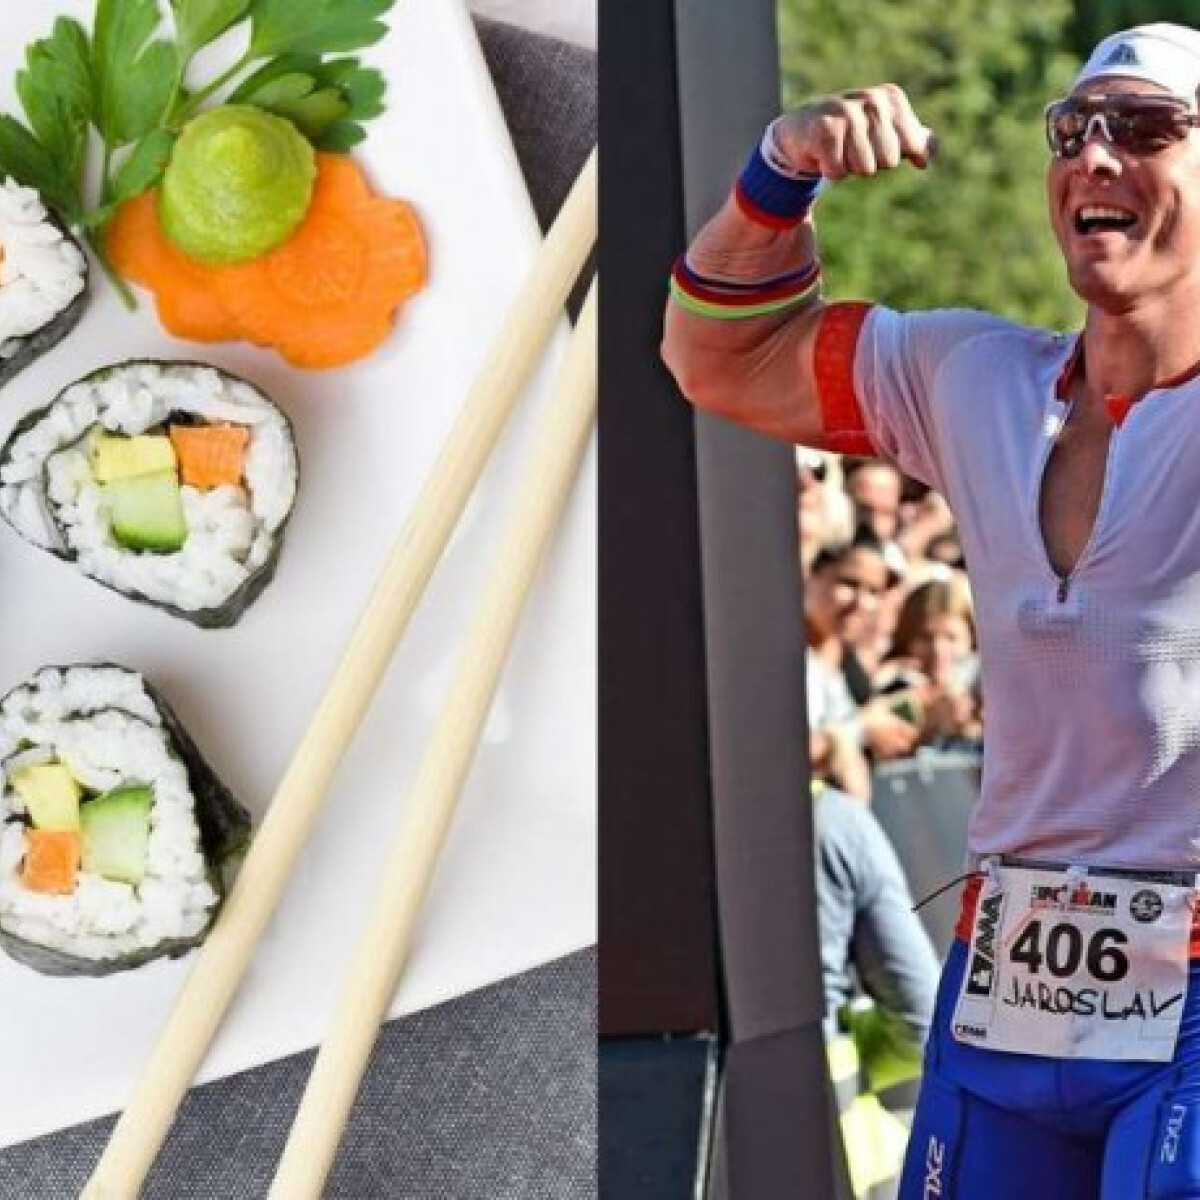 A teakedvelő triatlonversenyzőt kitiltották egy "all you can eat" étteremből, mert mindent felfalt